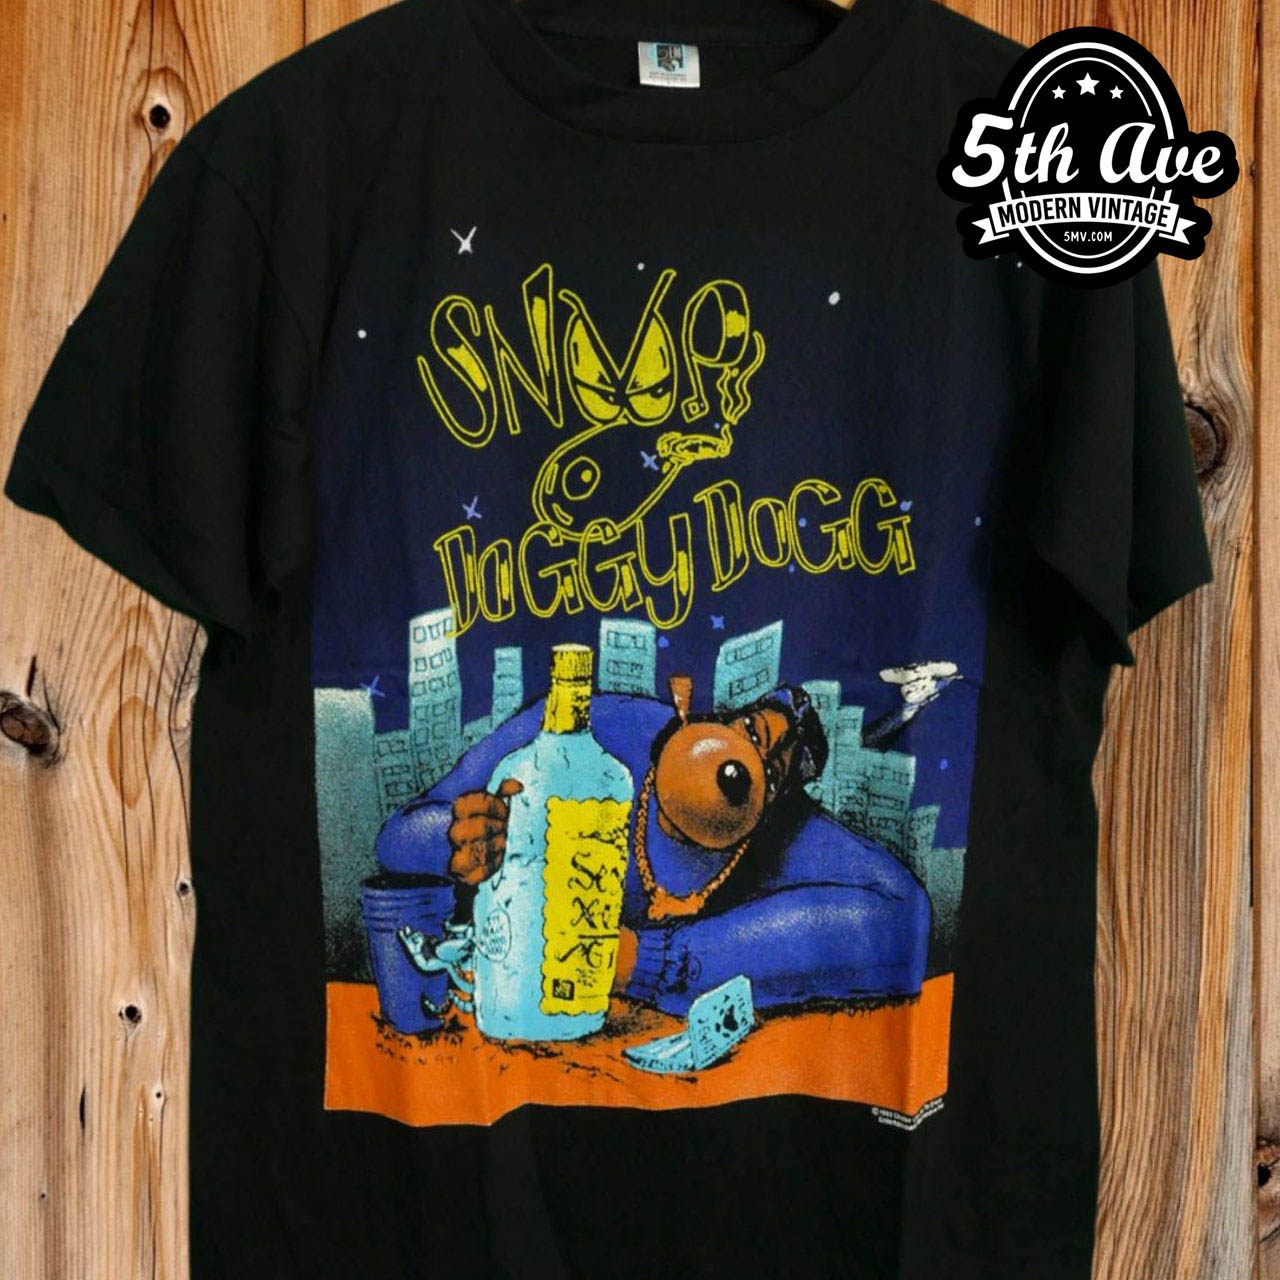 Snoop dogg vintage Tシャツ www.krzysztofbialy.com